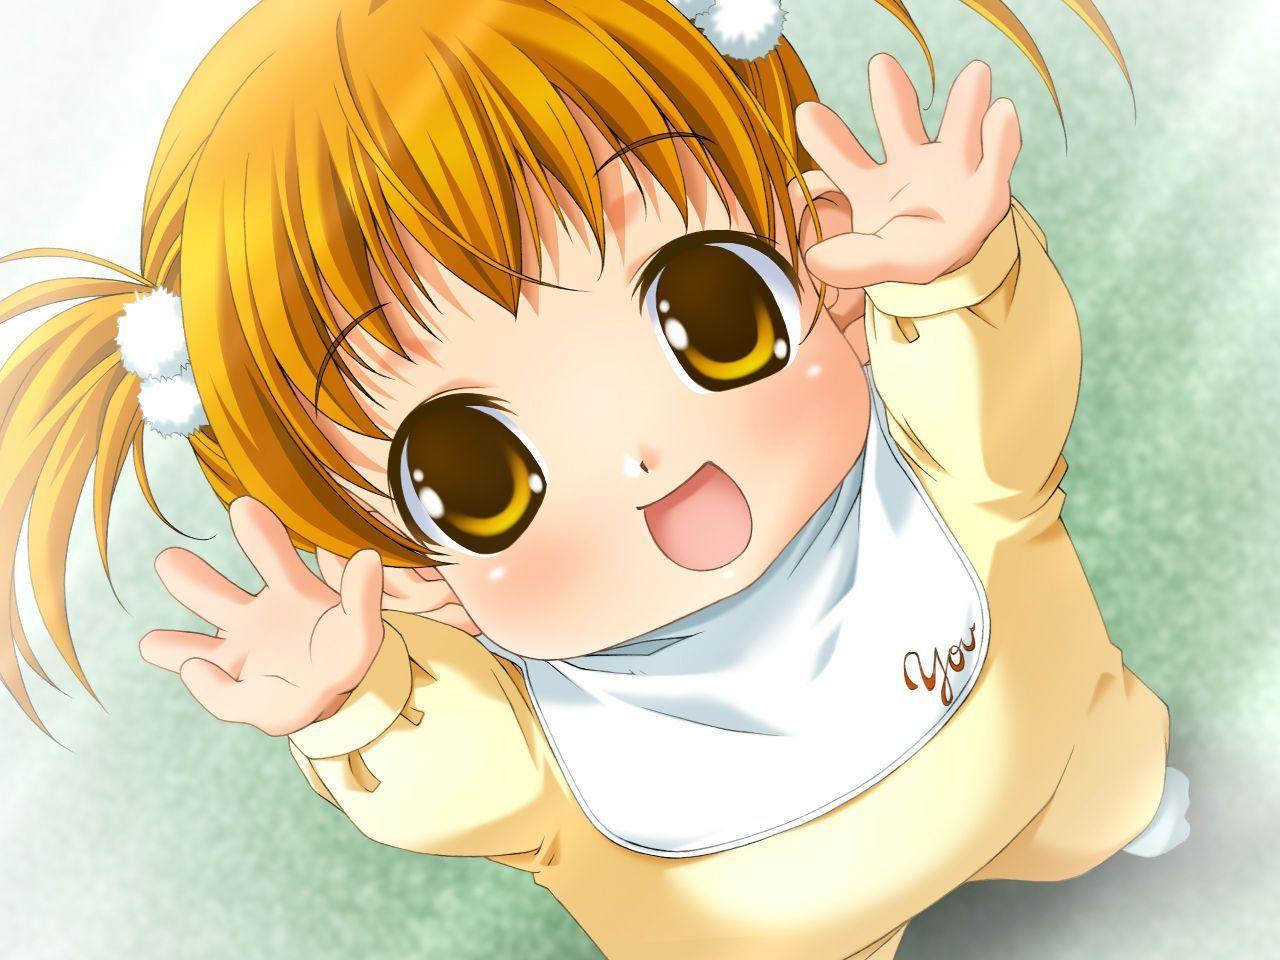 Hãy xem ảnh anime em bé cute này, nụ cười ngọt ngào của bé sẽ khiến bạn trở nên vui vẻ và hạnh phúc hơn. Không thể cưỡng lại được vẻ dễ thương của bé đó.